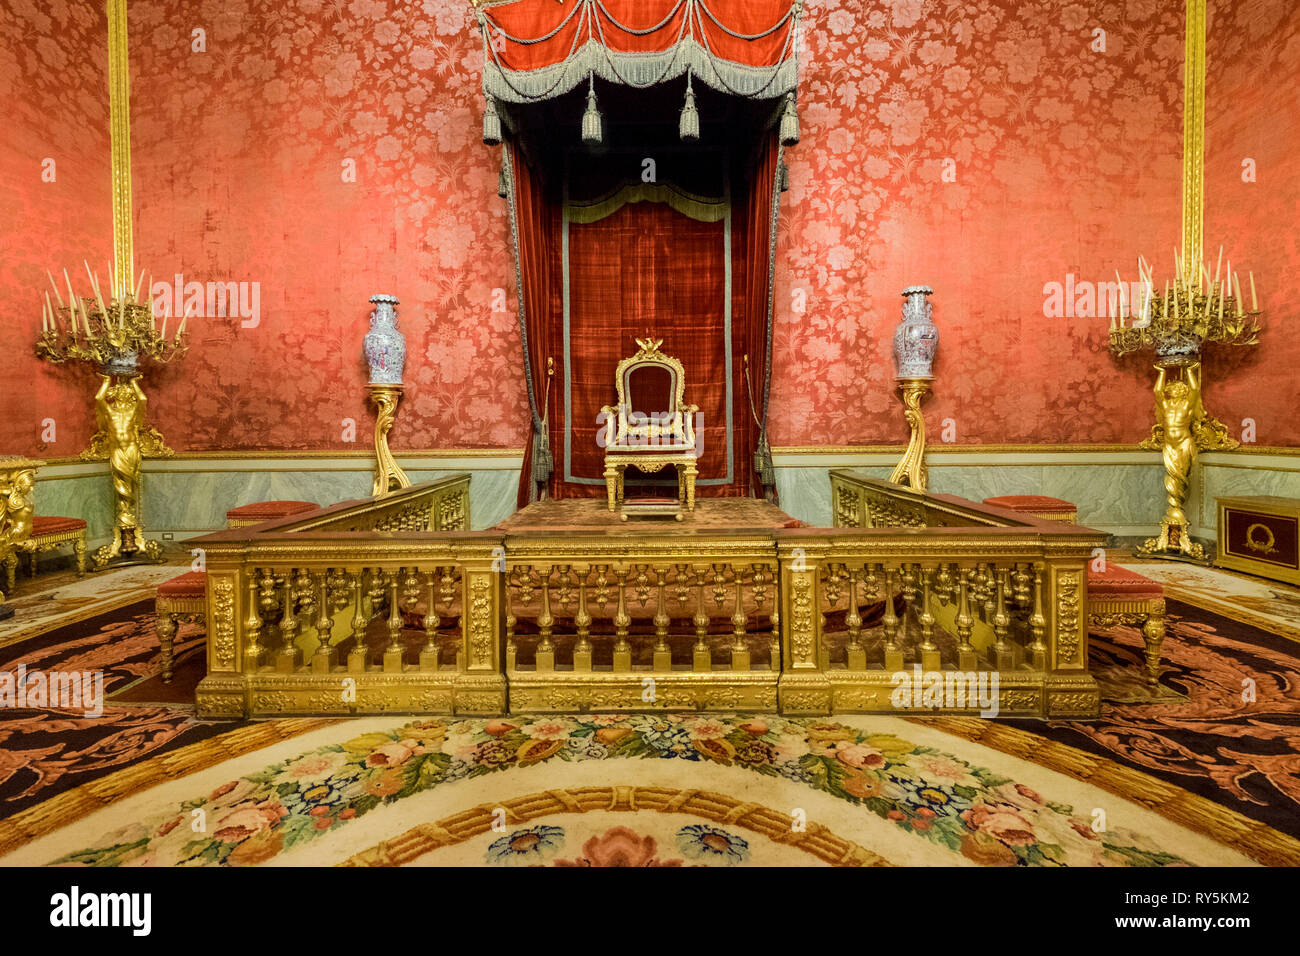 Trône dans une salle rouge, une partie de l'intérieur riche du Palais Pitti à Florence, Italie Banque D'Images